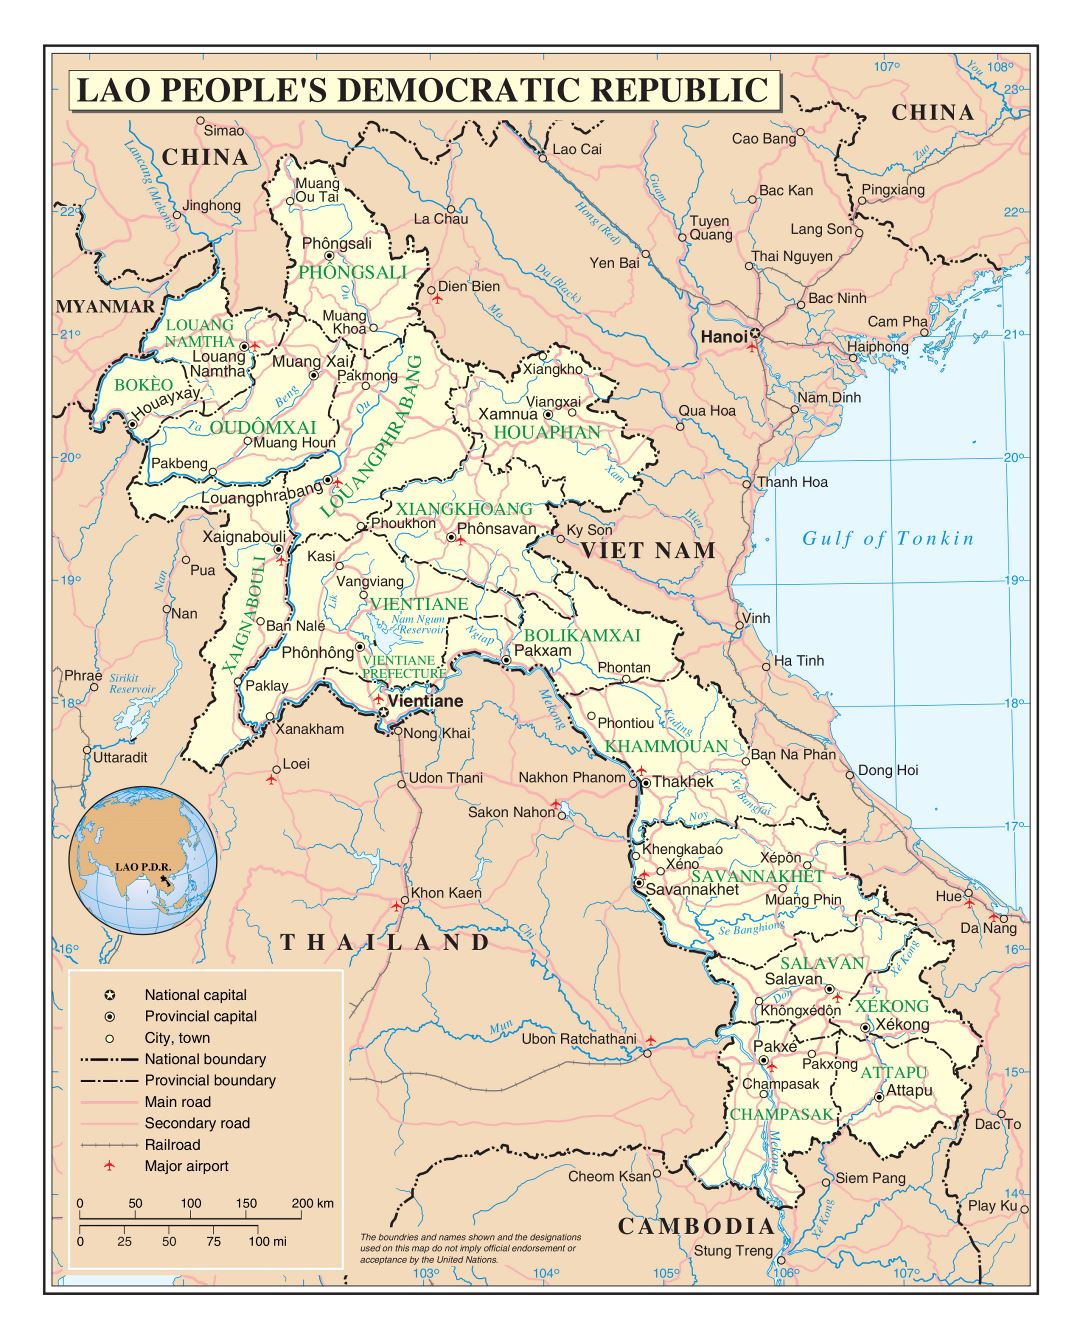 Grande detallado mapa político y administrativo de Laos con carreteras, ferrocarriles, ciudades y aeropuertos